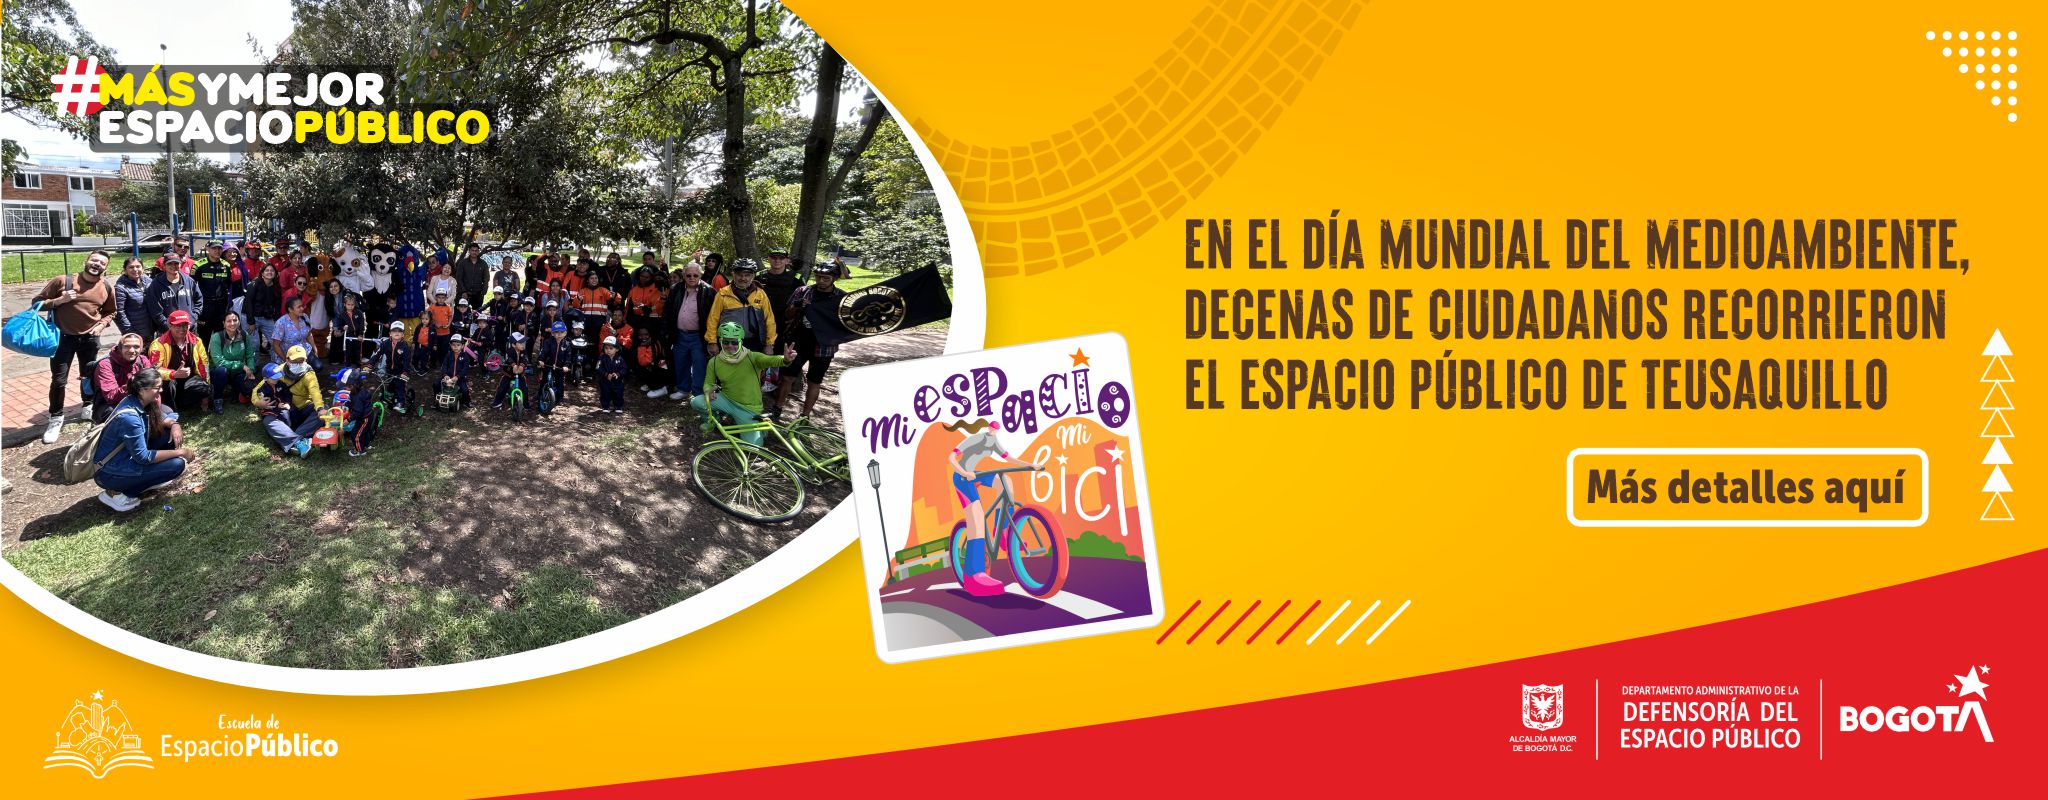 En el Día Mundial del Medioambiente, decenas de ciudadanos recorrieron el espacio público de Teusaquillo con ‘Mi Espacio, Mi Bici’